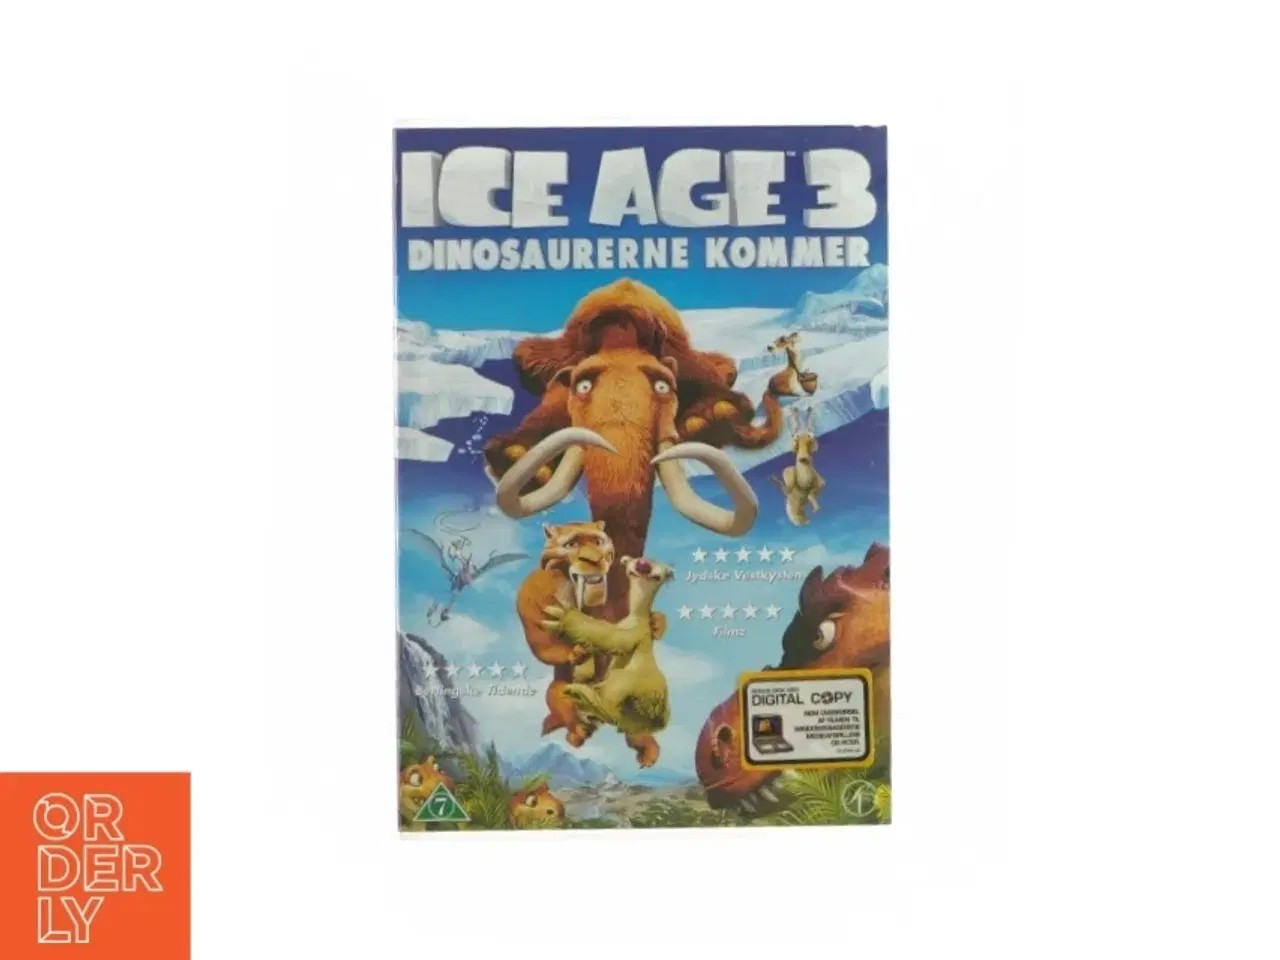 Billede 1 - Ice age 3 - dinosaurerne kommer (DVD)